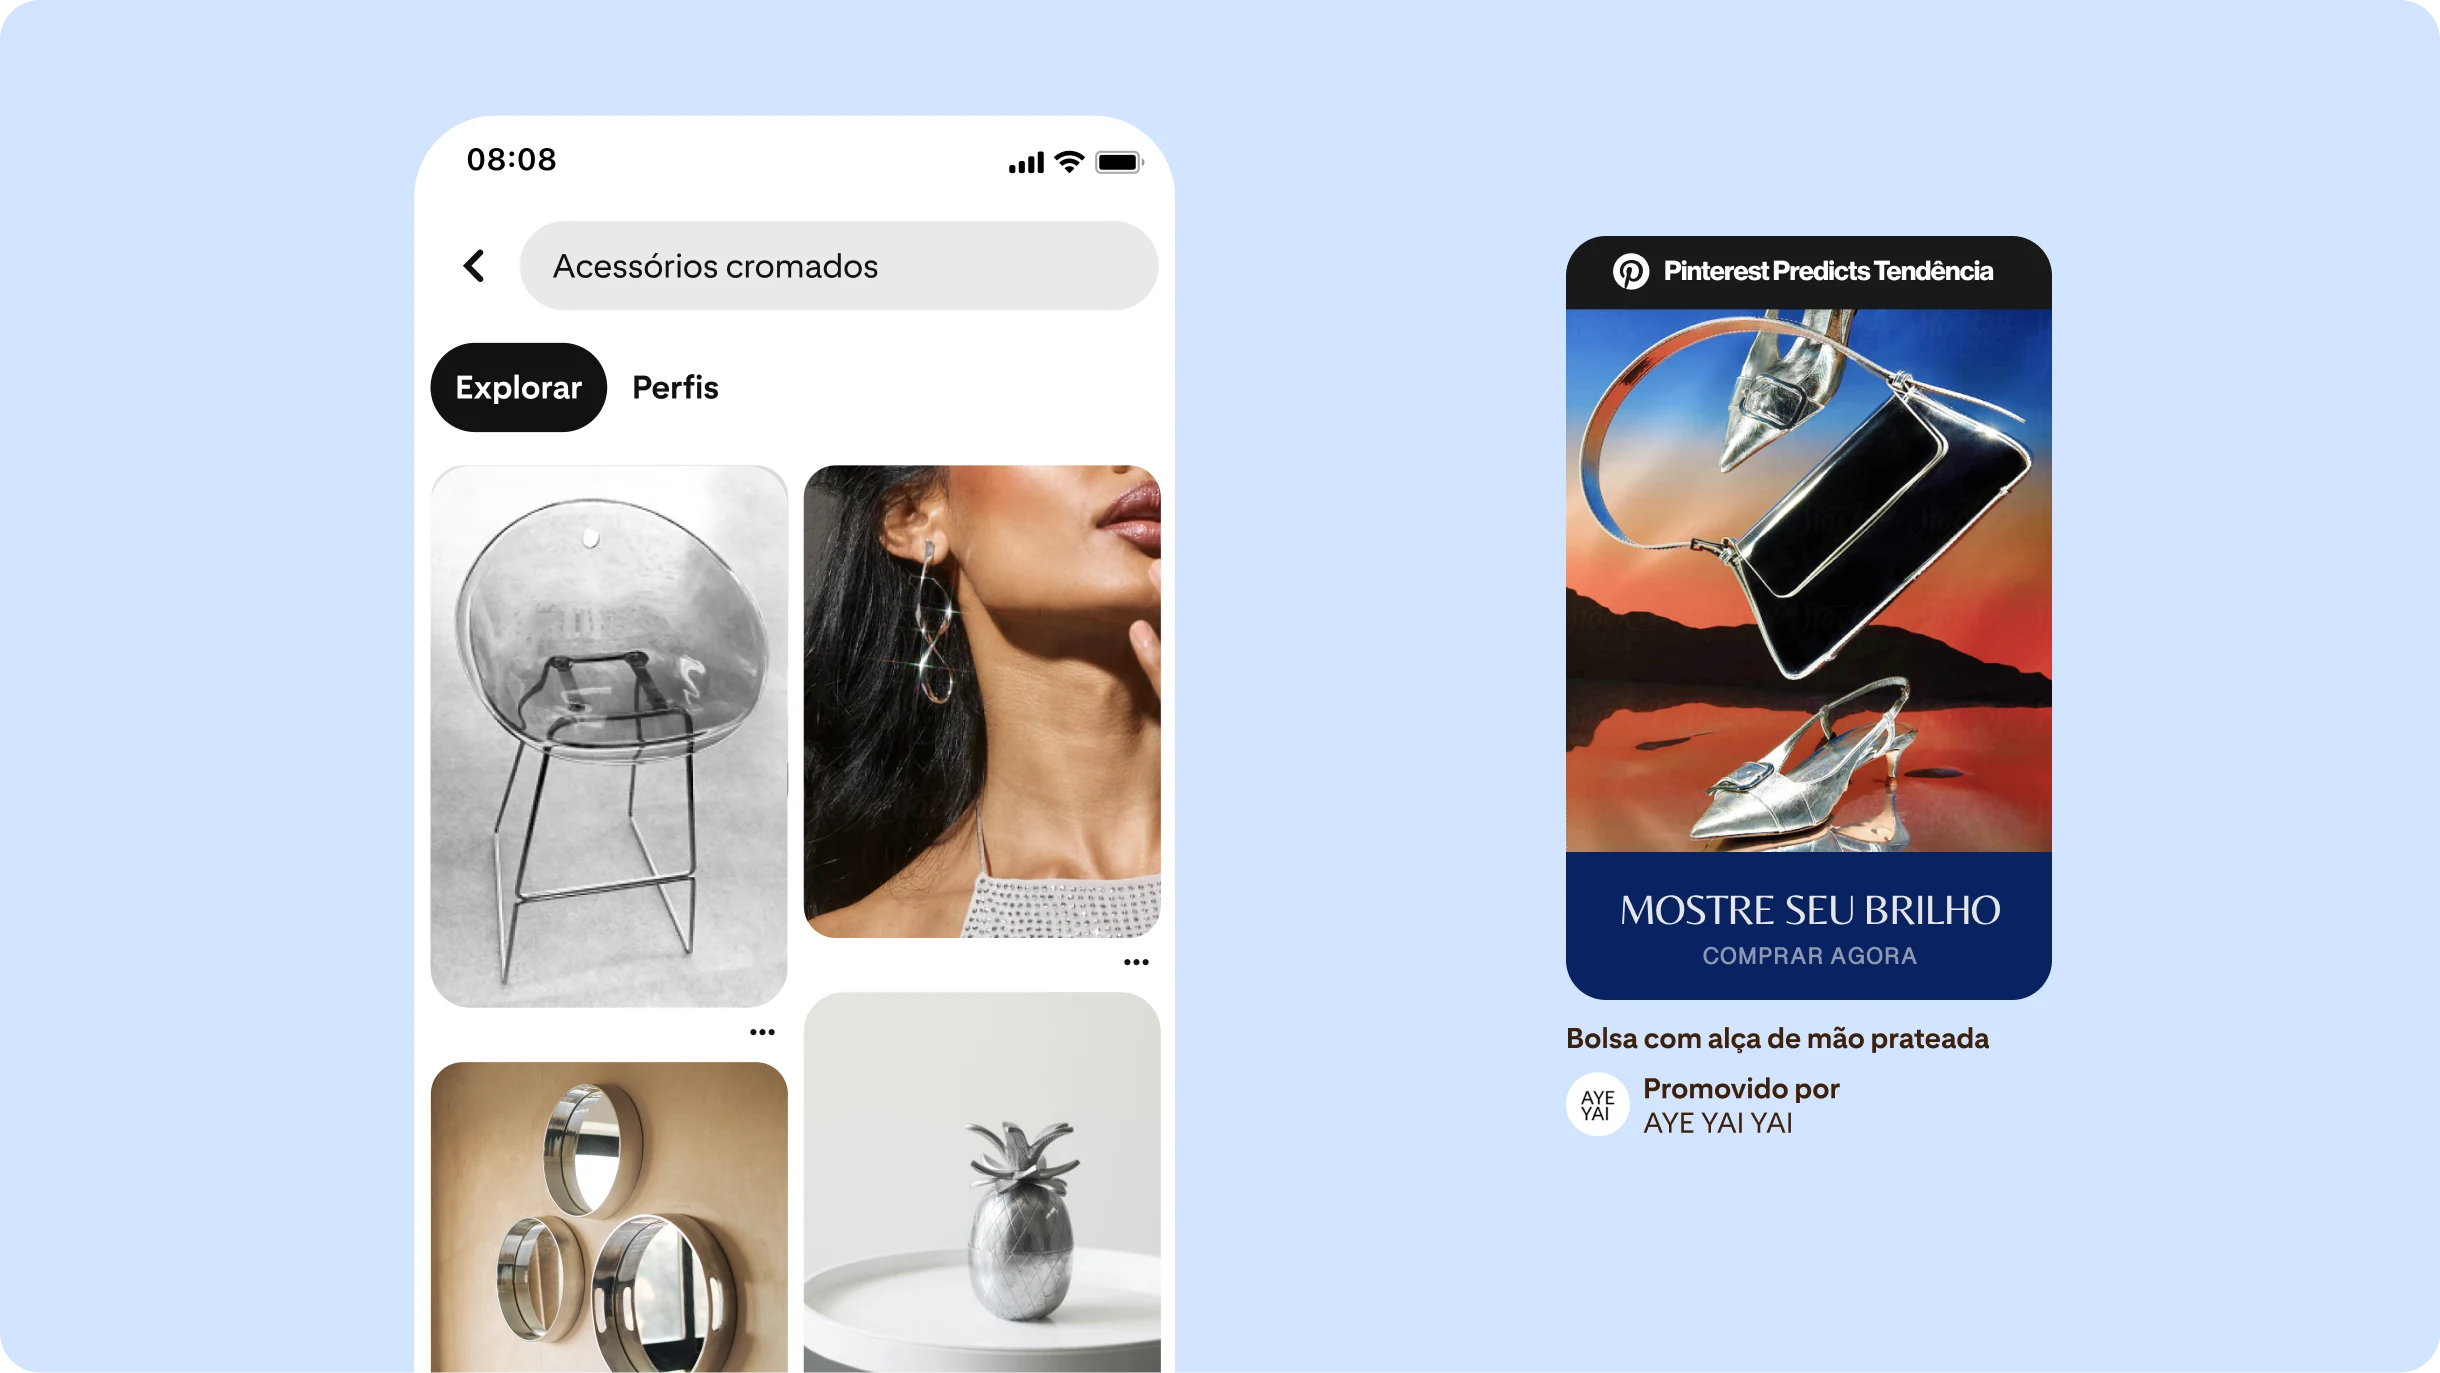 O feed inicial do Pinterest mostra "Acessórios cromados" na barra de pesquisa à esquerda e Pins abaixo com acessórios e móveis cromados. À direita, um anúncio no formato de Pin diz "Mostre seu brilho".